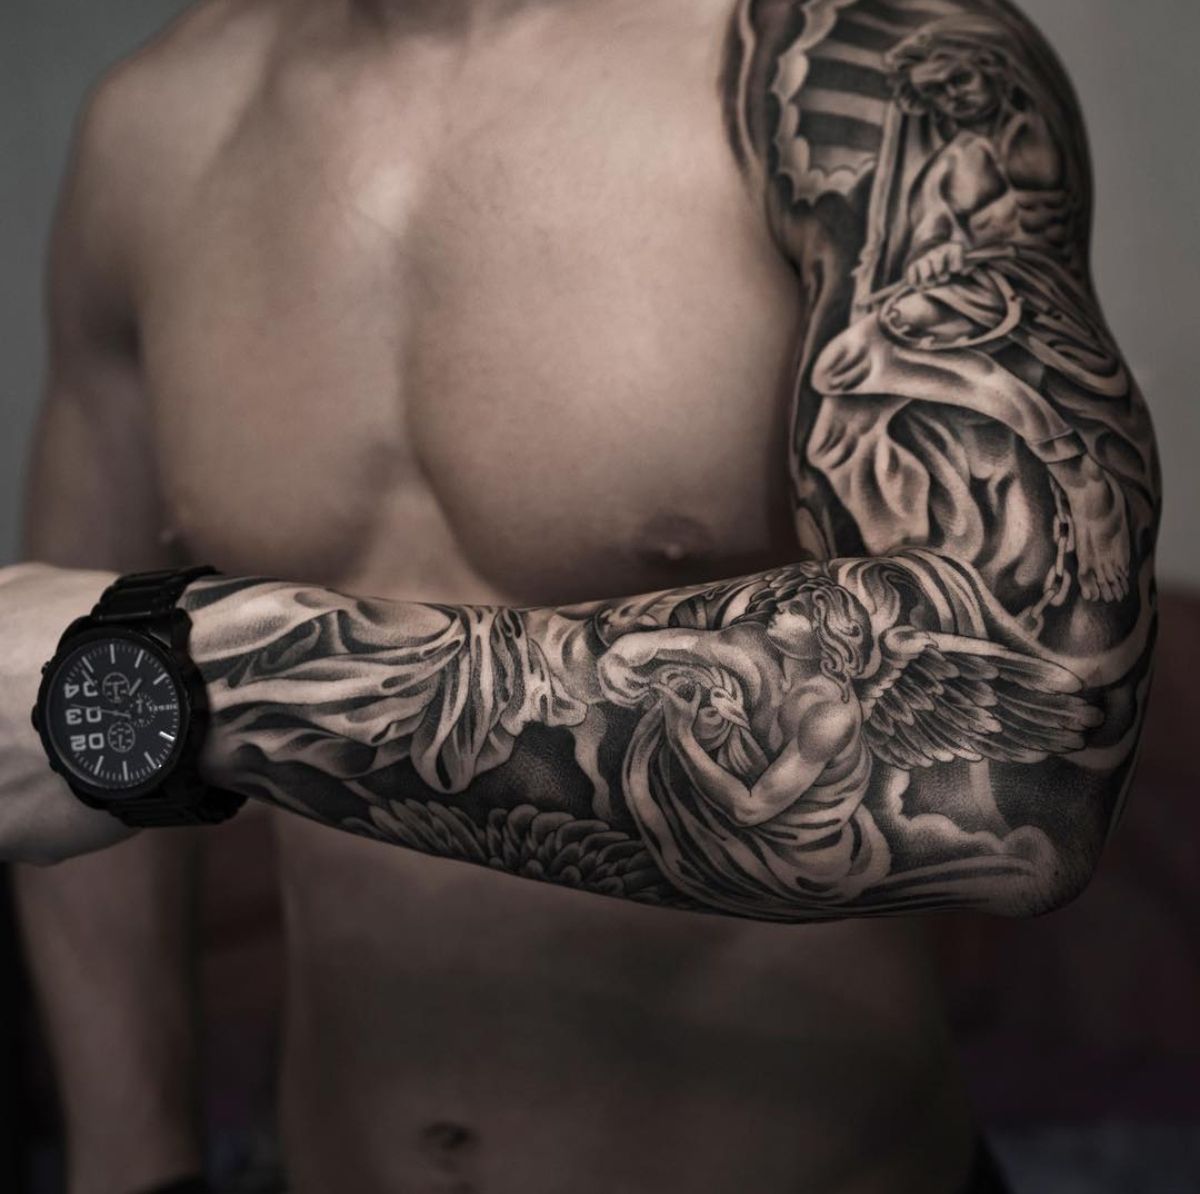 Новые тату 2022 года для мужчин - эскизы с фото: на руке, на ноге, на плече, запястье, спине - красивые и модные идеи